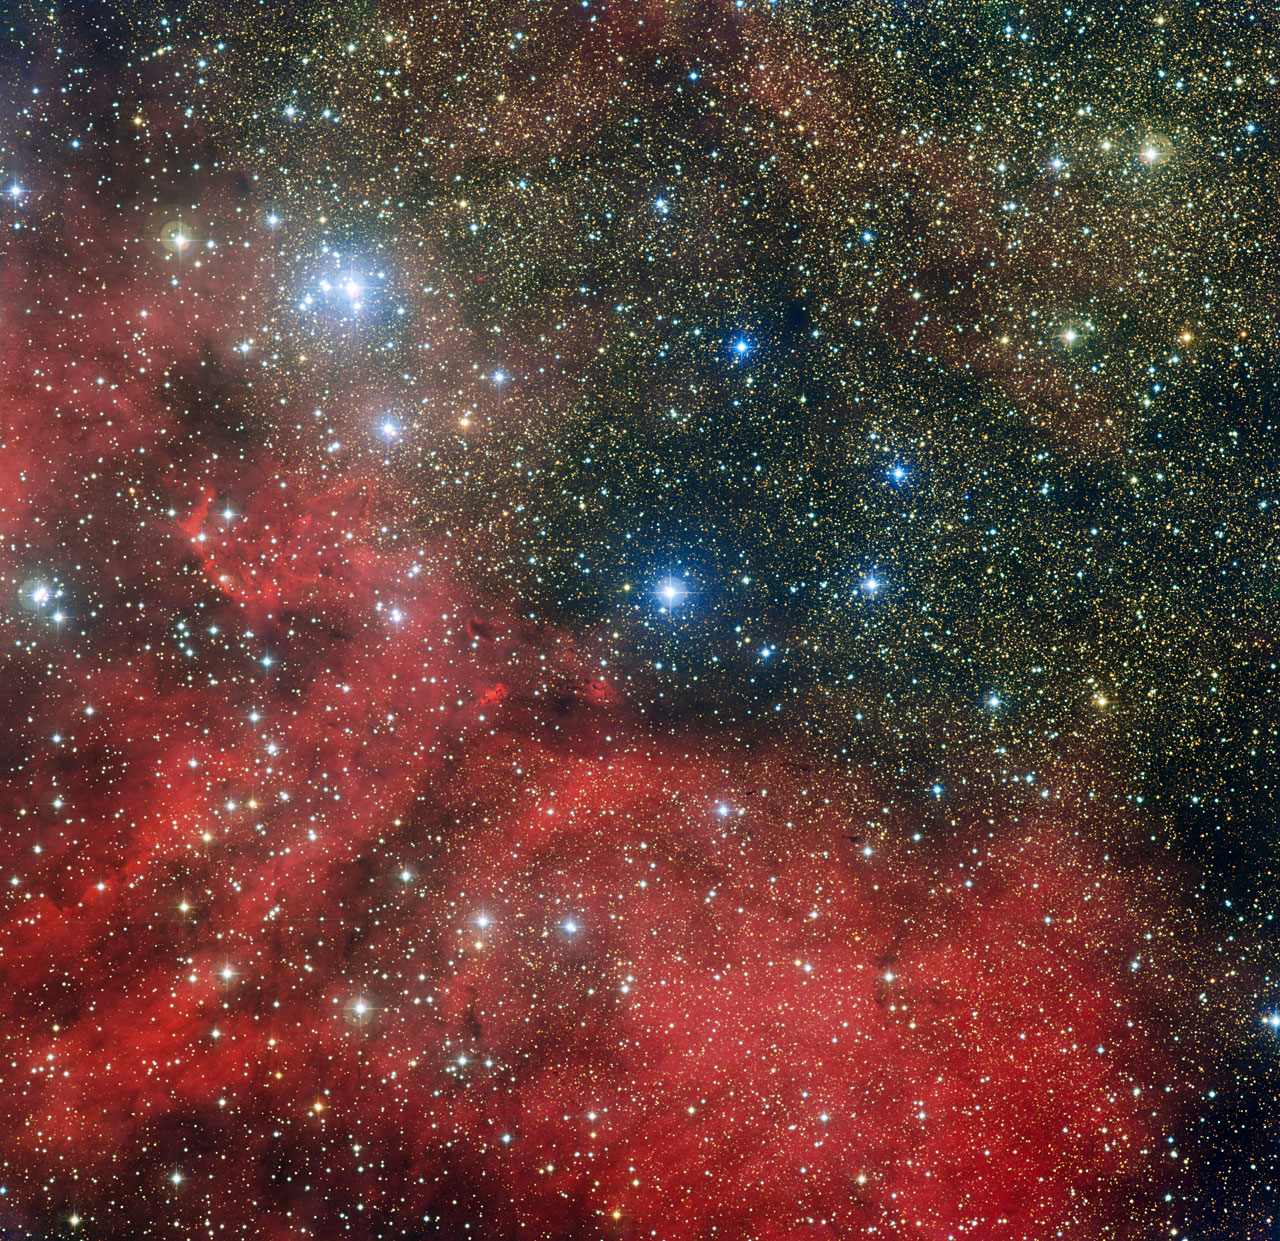 L'amas d'étoiles NGC 6604 est dévoilé sur cette nouvelle image prise avec la caméra WFI installée sur le télescope MPG/ESO de 2,2 mètres de l'Observatoire La Silla au Chili. NGC 6604 est le groupement lumineux qui s'étend en haut à gauche de l'image. C'est un jeune amas d'étoiles qui constitue la partie la plus dense d'un groupe plus largement étendu contenant environ une centaine d'étoiles bleuâtres lumineuses. L'image montre également la nébuleuse associée à cet amas – un nuage d'hydrogène ionisé lumineux appelé Sh2-54 – ainsi que des nuages de poussière. © ESO